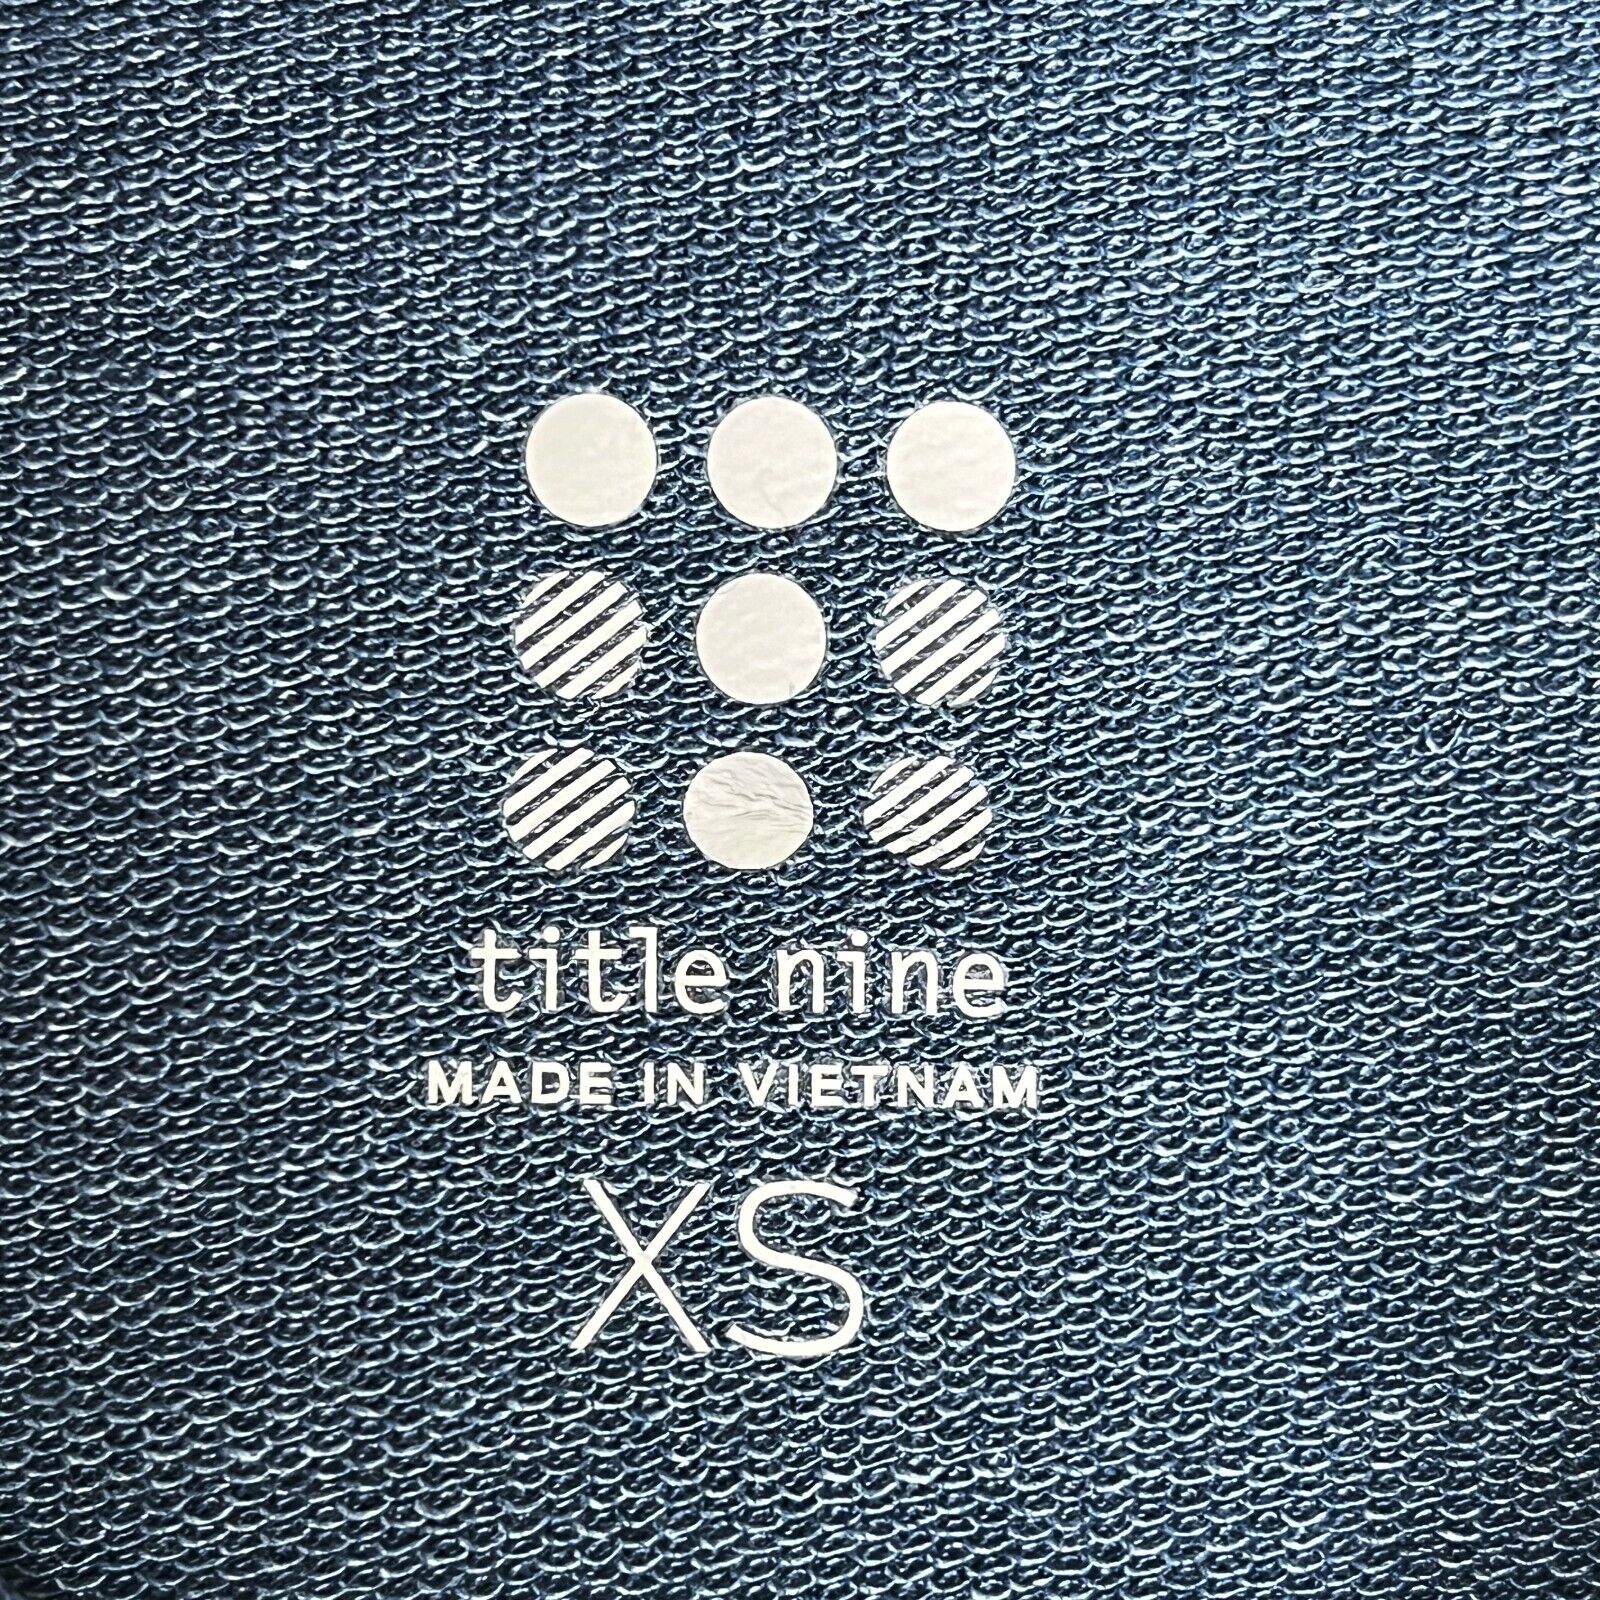 Title Nine Blue Long Sleeve Hoodie Dress w Front Zipper Pocket Size XS